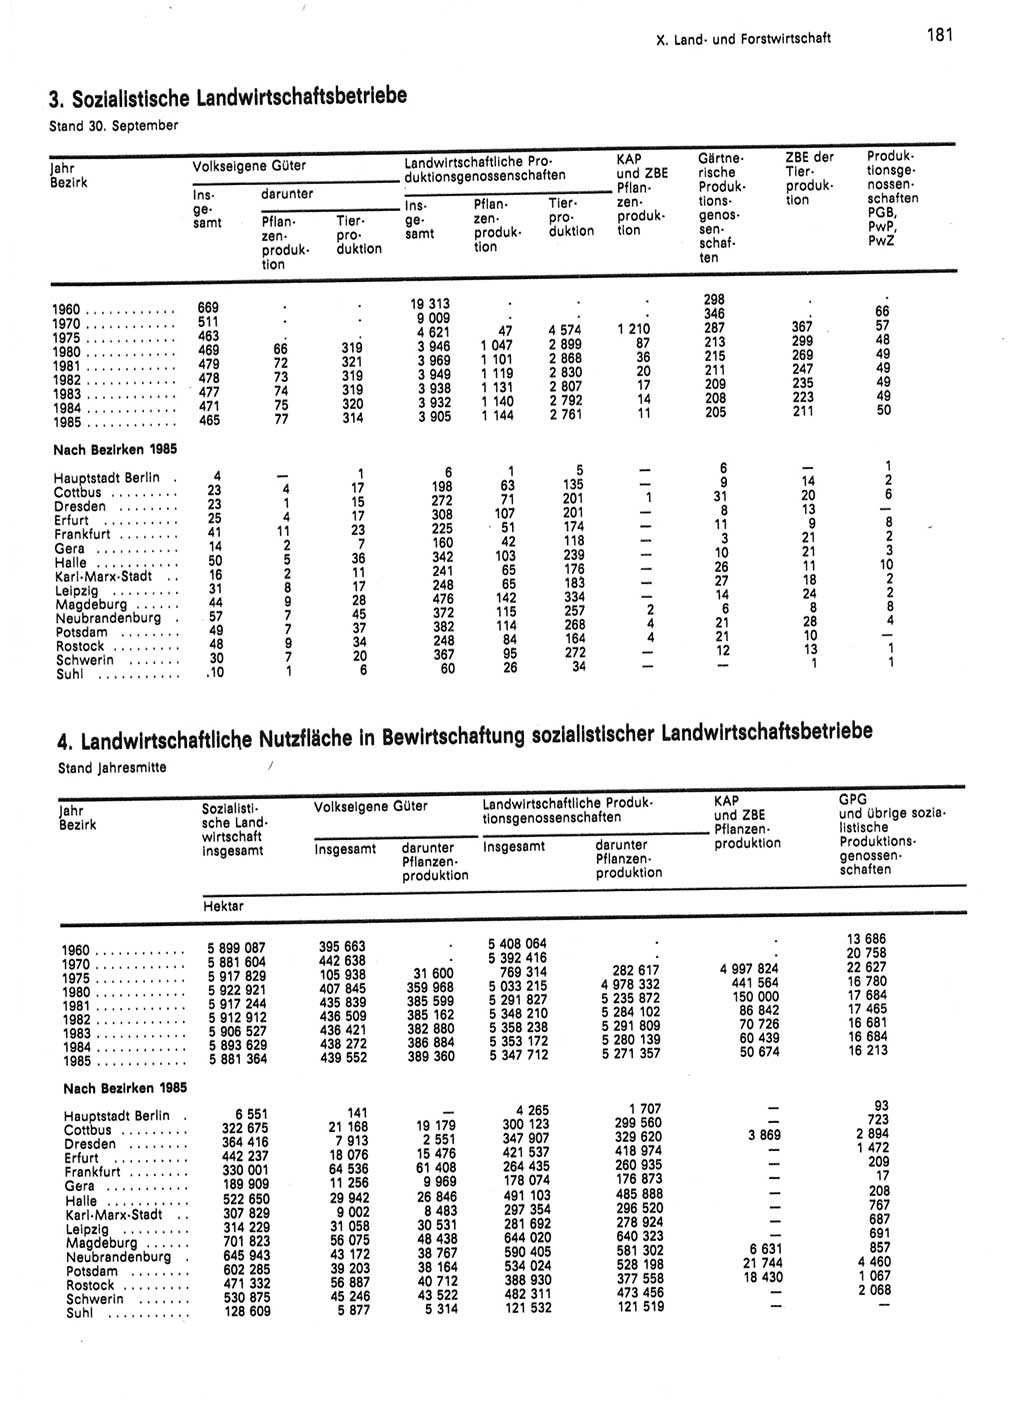 Statistisches Jahrbuch der Deutschen Demokratischen Republik (DDR) 1986, Seite 181 (Stat. Jb. DDR 1986, S. 181)